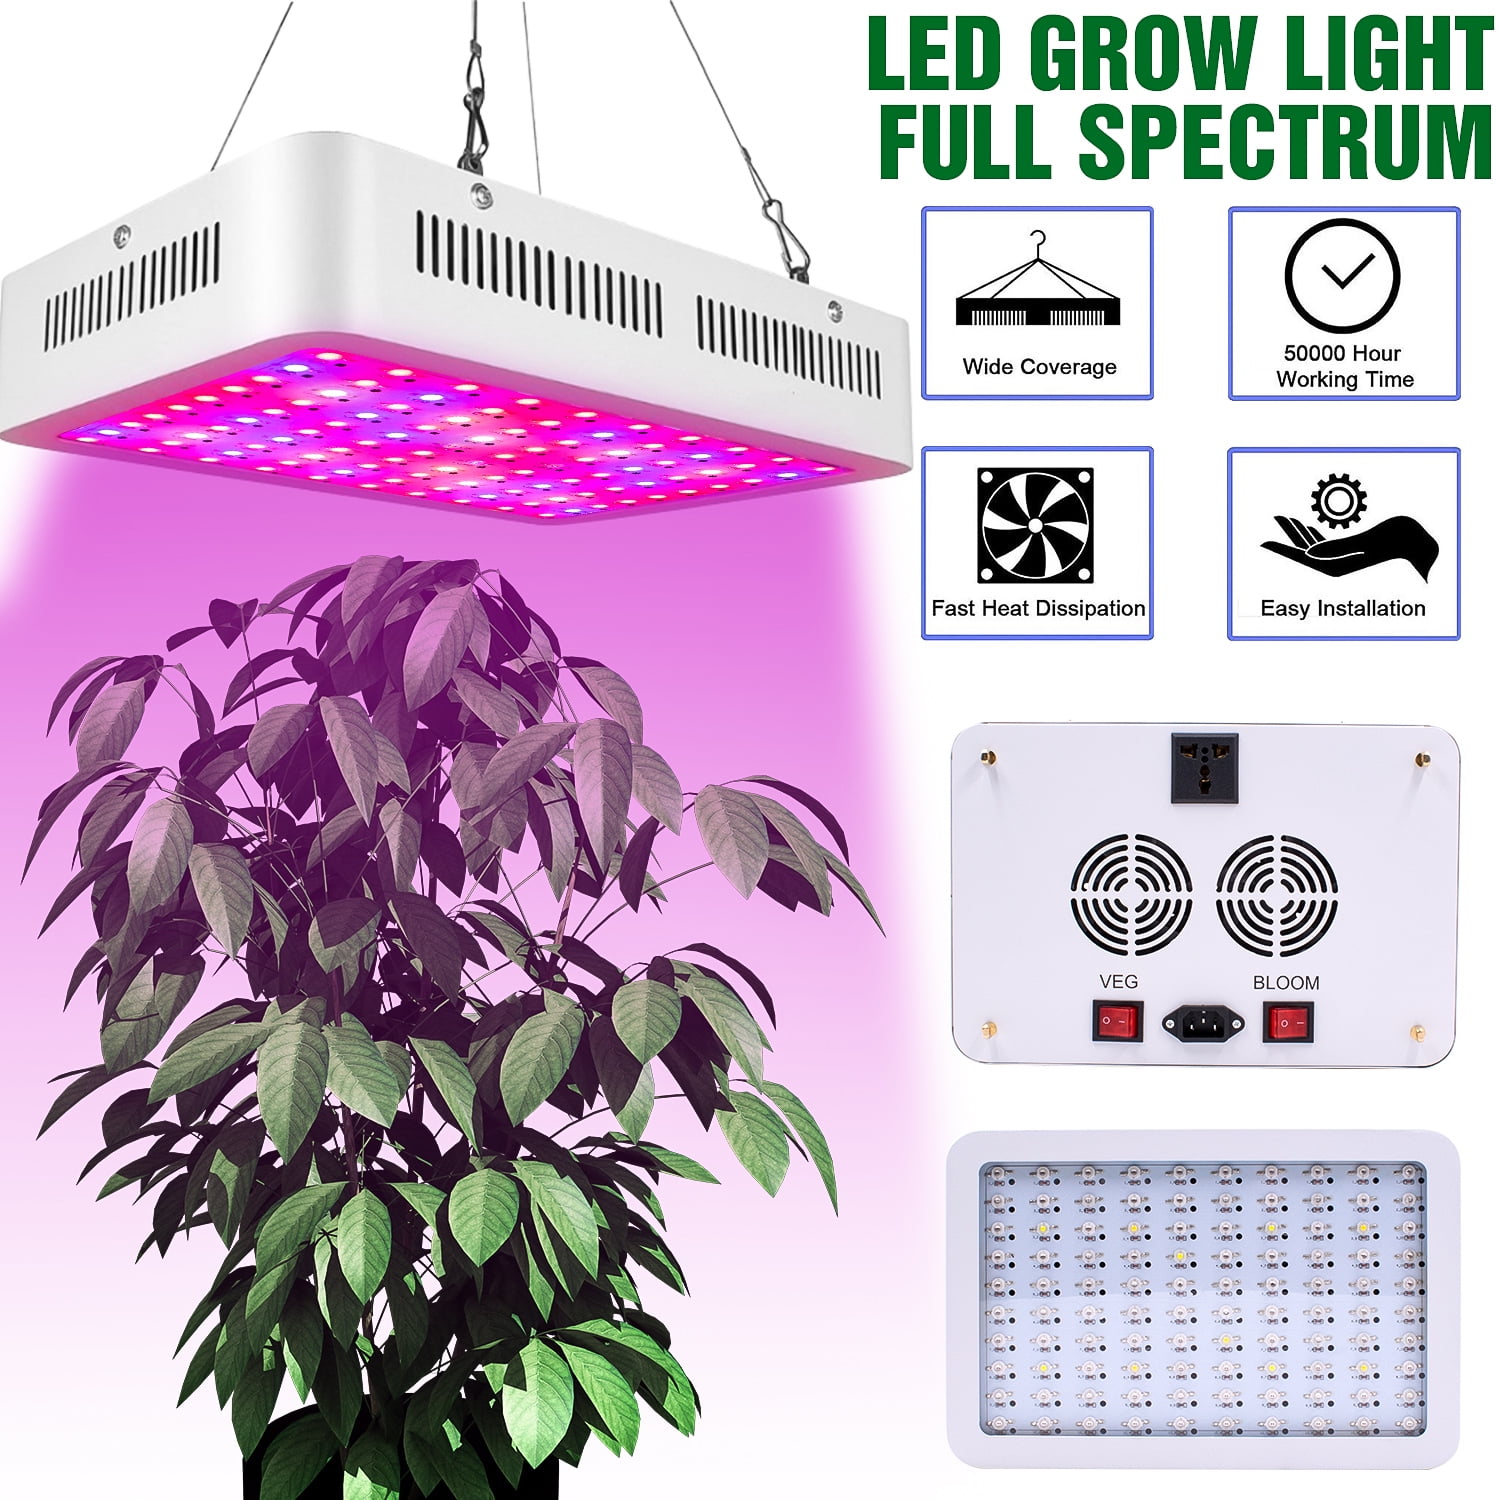 600W LED Grow Light Full Spectrum Panel Growing Lamp for Indoor Plants Veg Bloom 